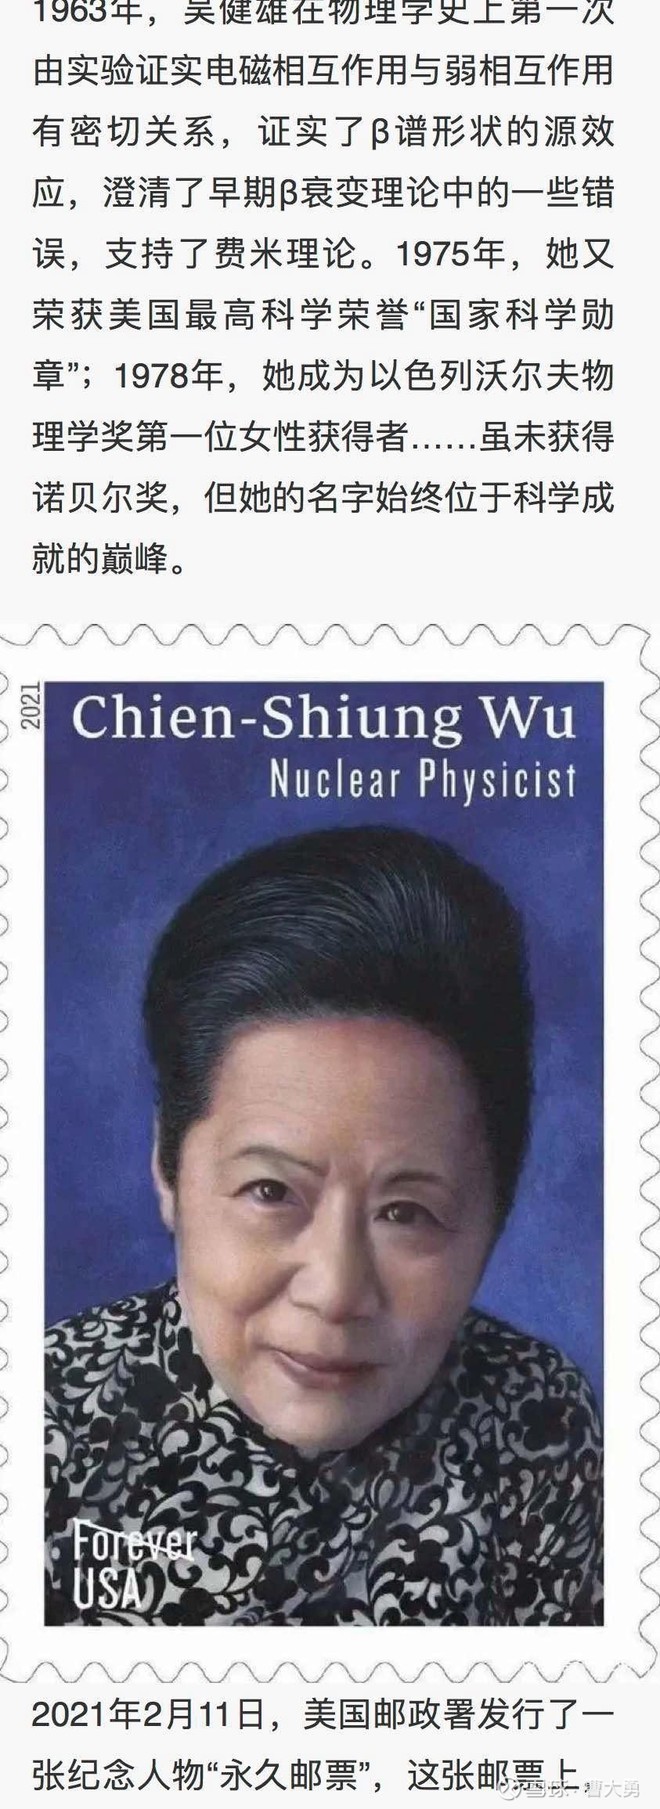 无所谓，美国人都帮她出邮票了：